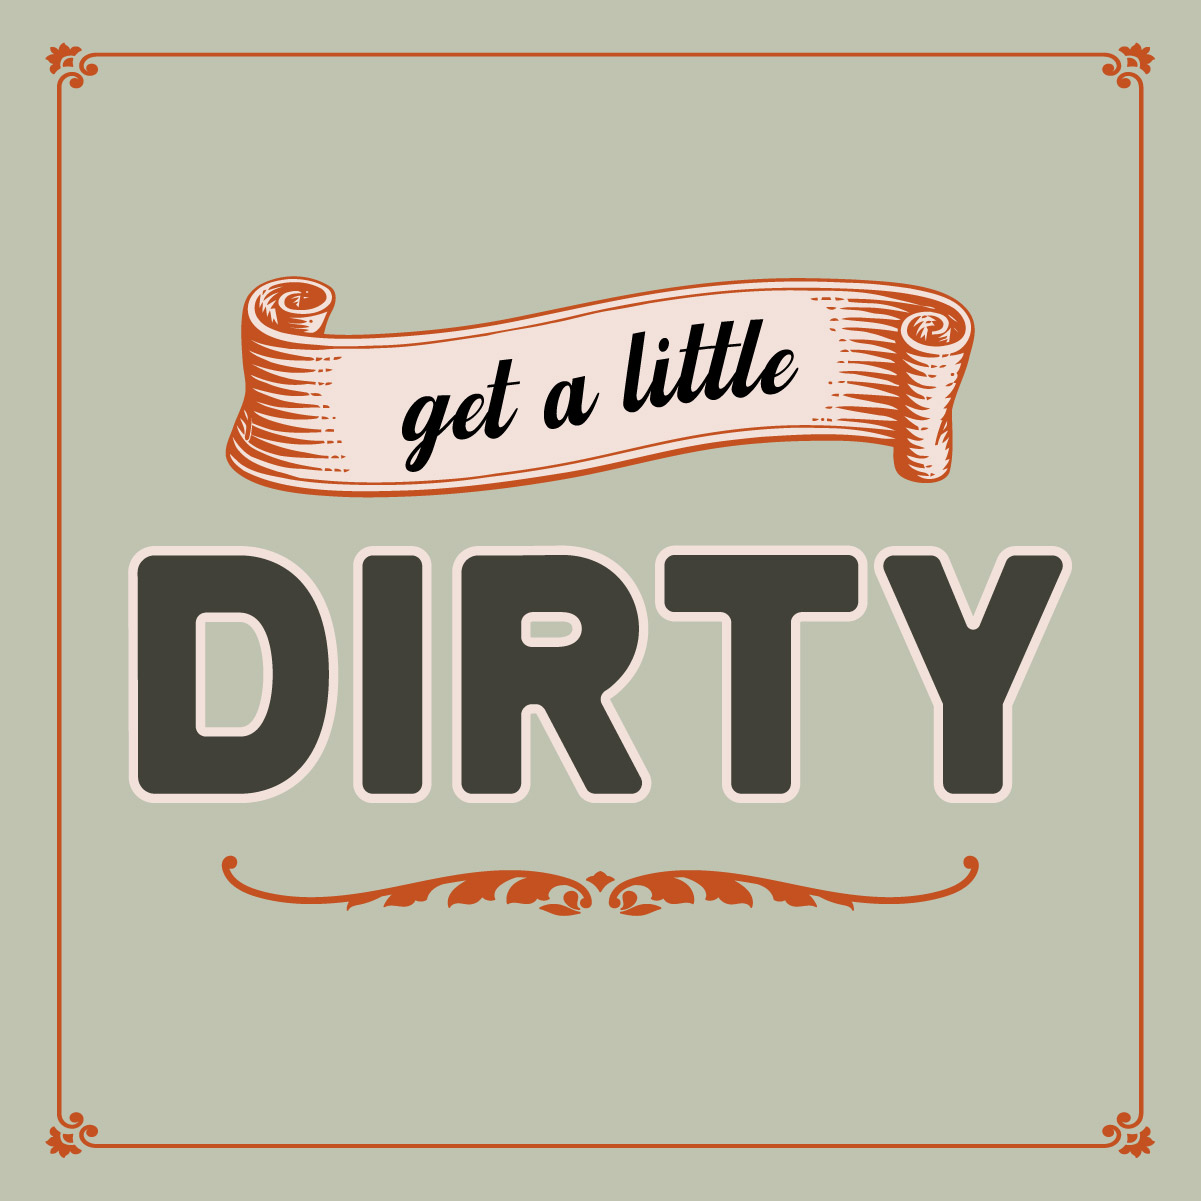 Get a little dirty